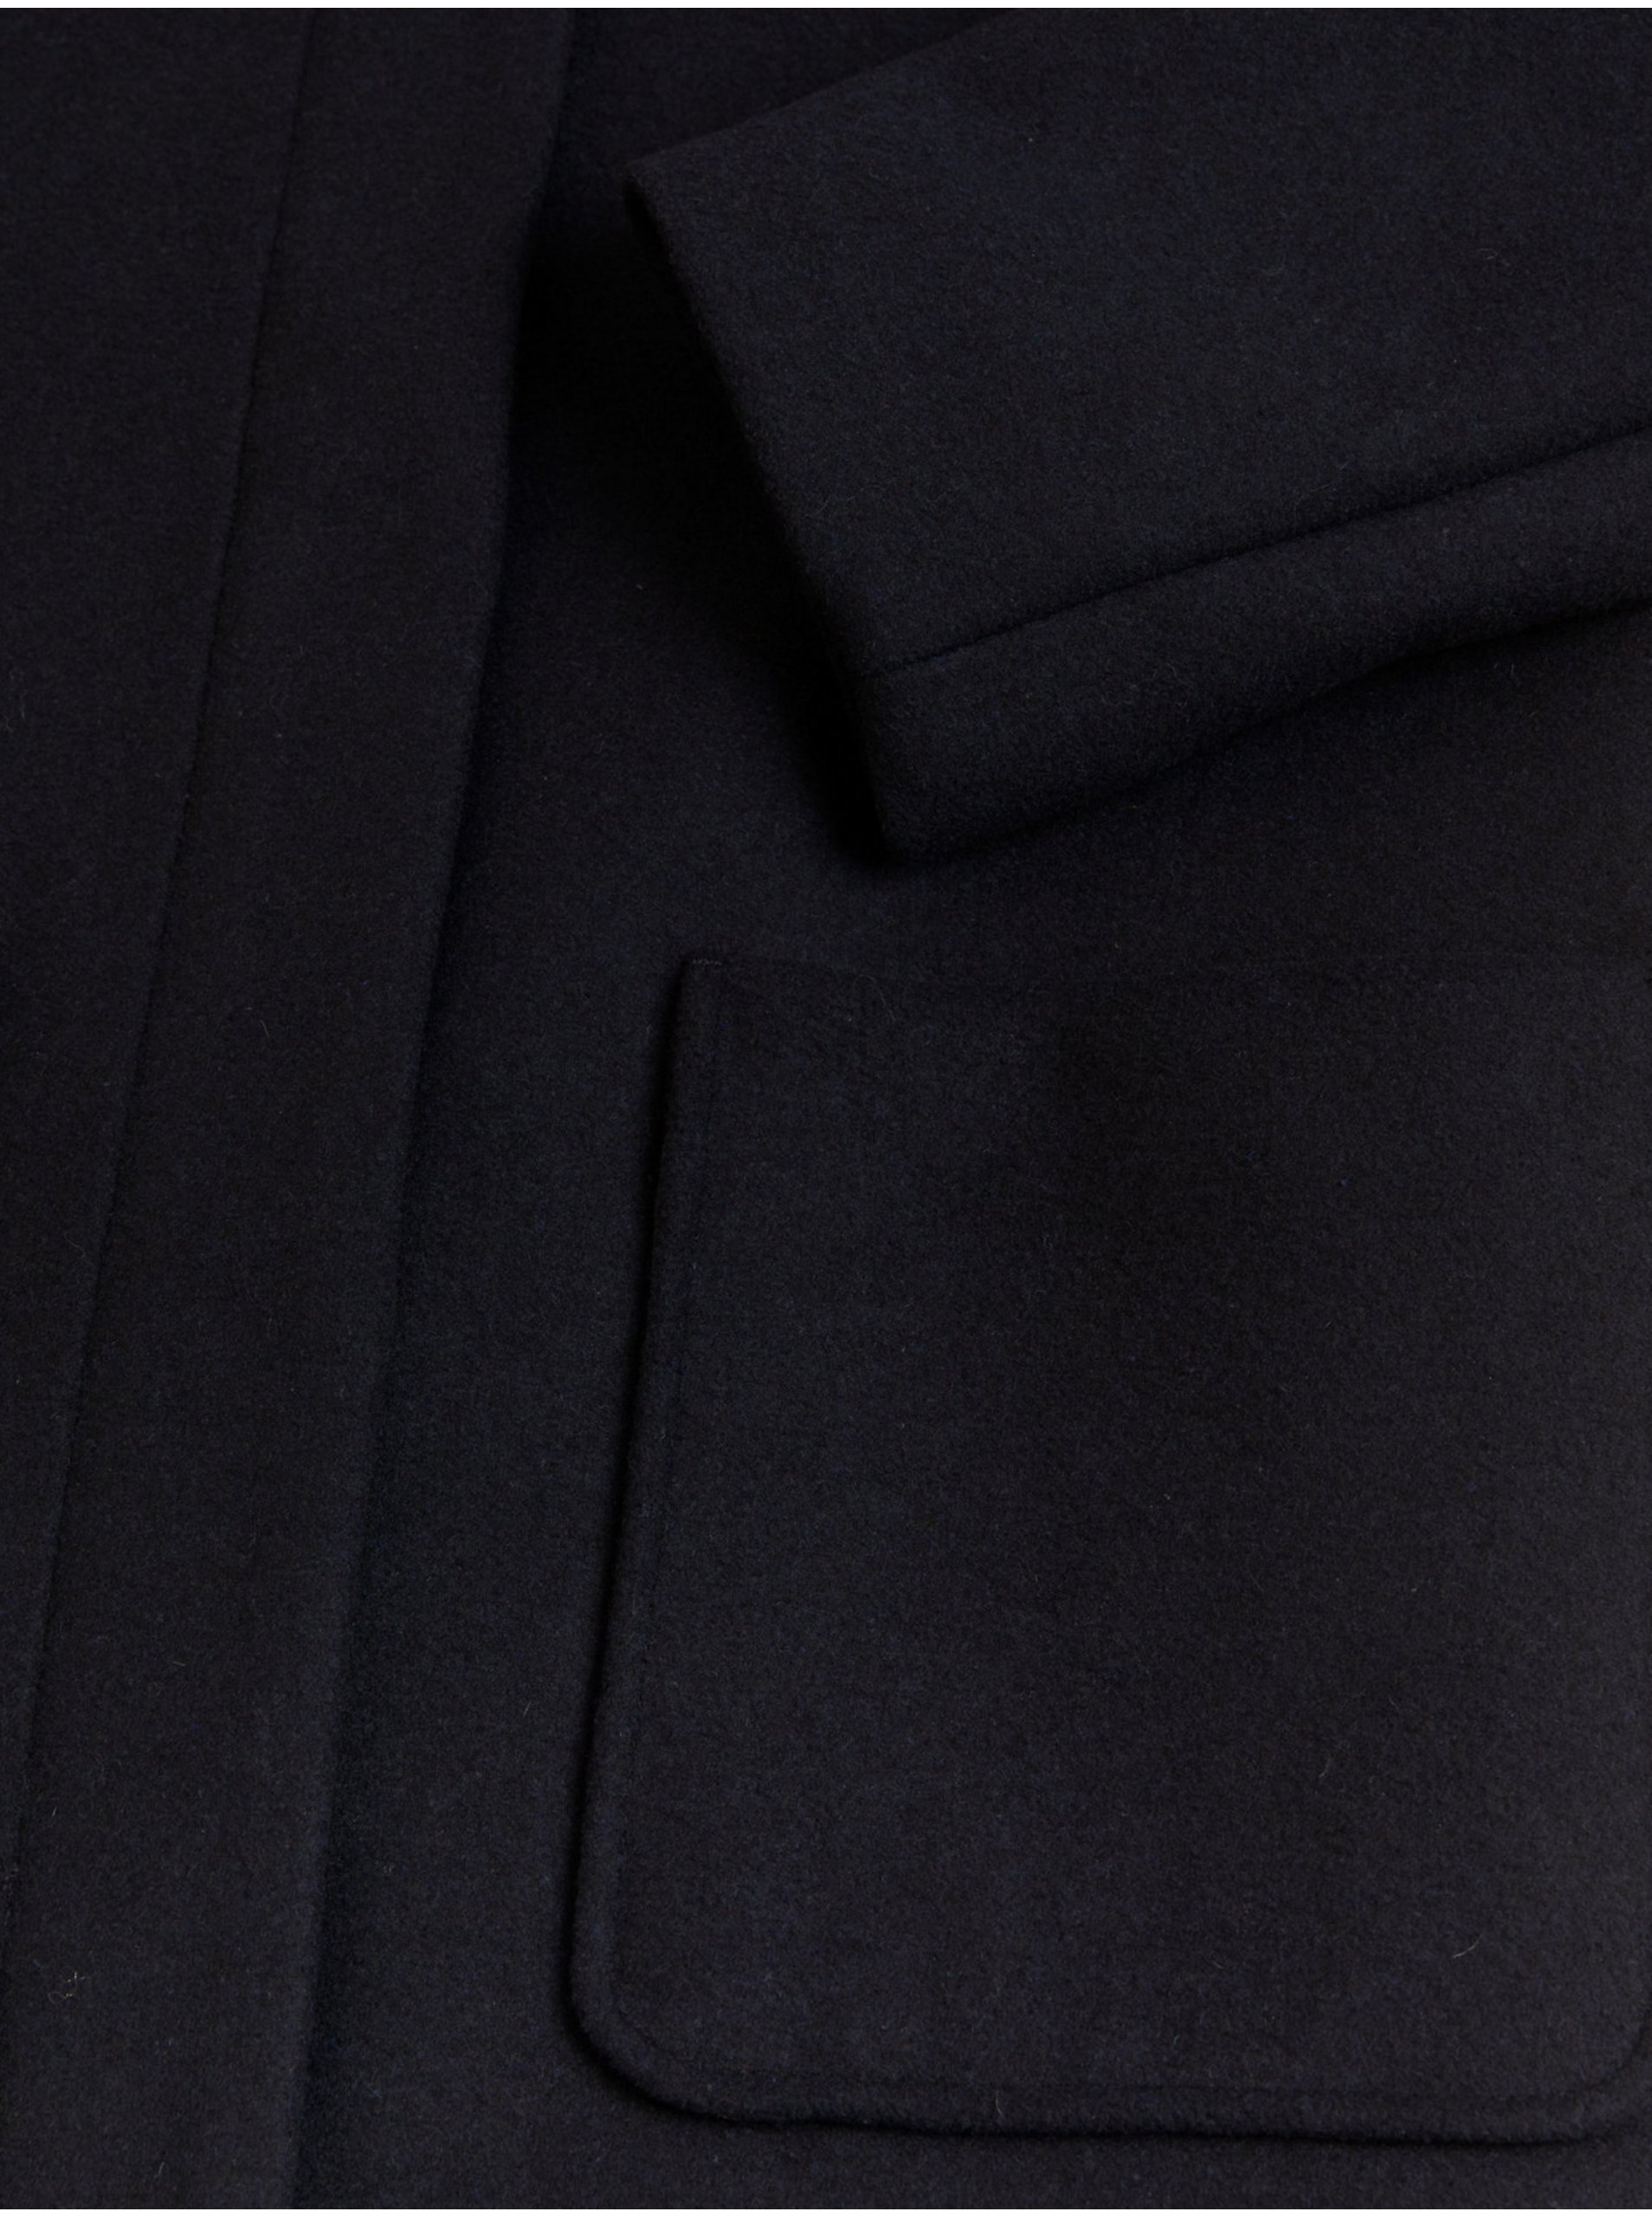 Tmavě modrý dámský kabát s příměsí vlny Marks & Spencer